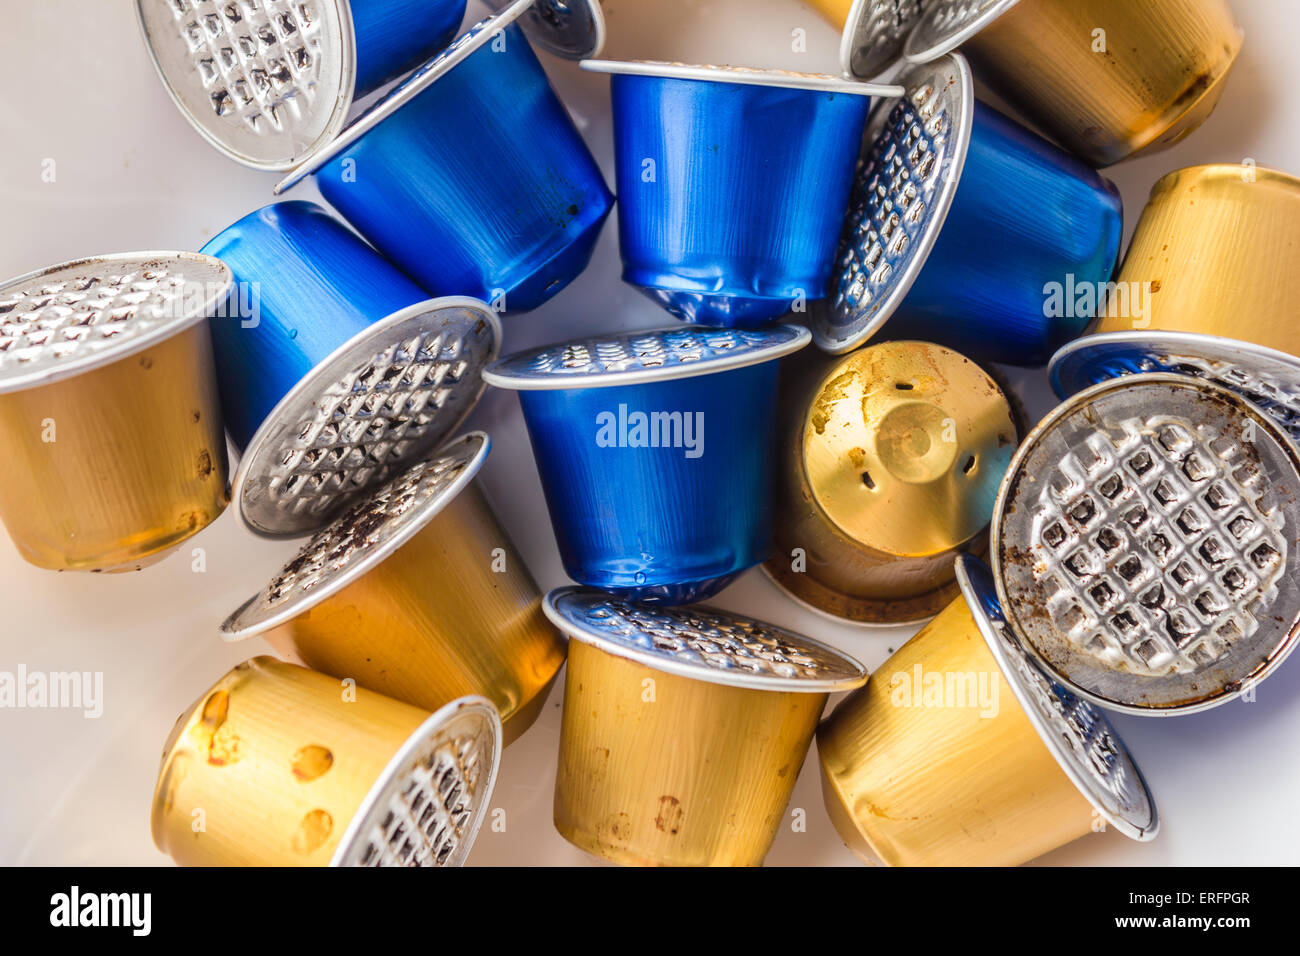 Dépensé ou utilisé des capsules Nespresso vides, des capsules à café,  capsules en aluminium, le recyclage des matières premières Photo Stock -  Alamy